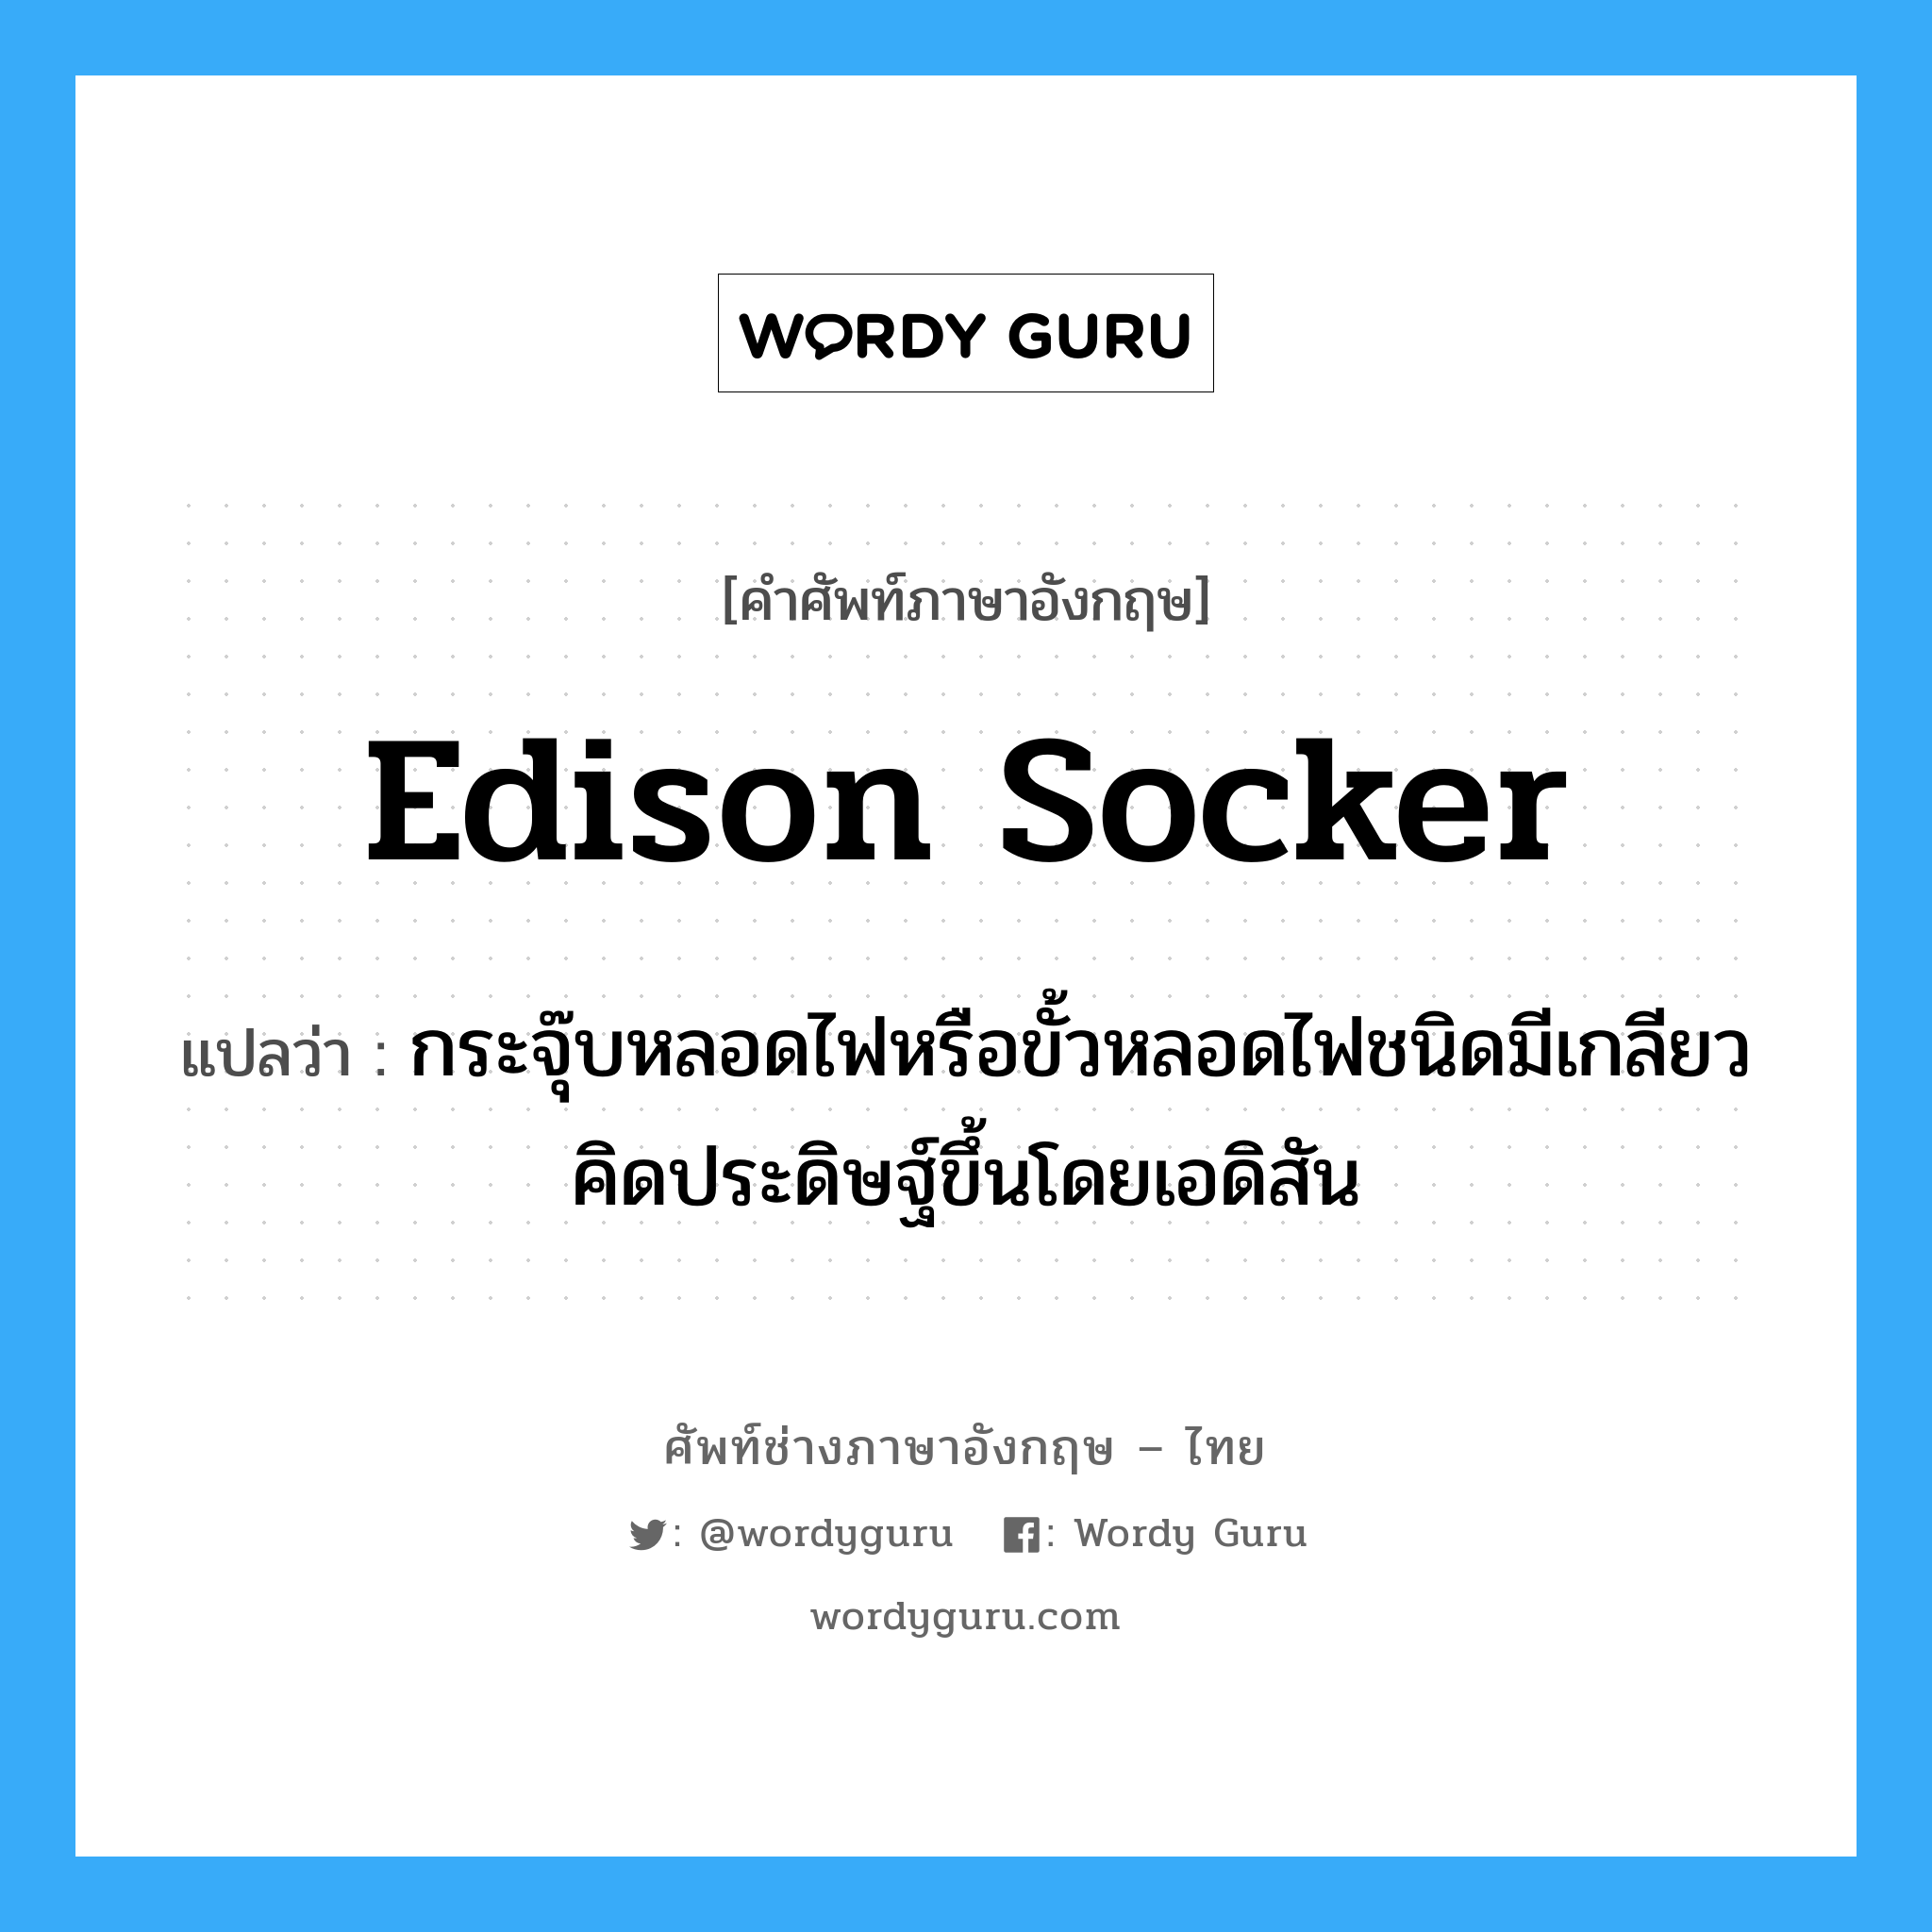 Edison socker แปลว่า?, คำศัพท์ช่างภาษาอังกฤษ - ไทย Edison socker คำศัพท์ภาษาอังกฤษ Edison socker แปลว่า กระจุ๊บหลอดไฟหรือขั้วหลอดไฟชนิดมีเกลียวคิดประดิษฐ์ขึ้นโดยเอดิสัน